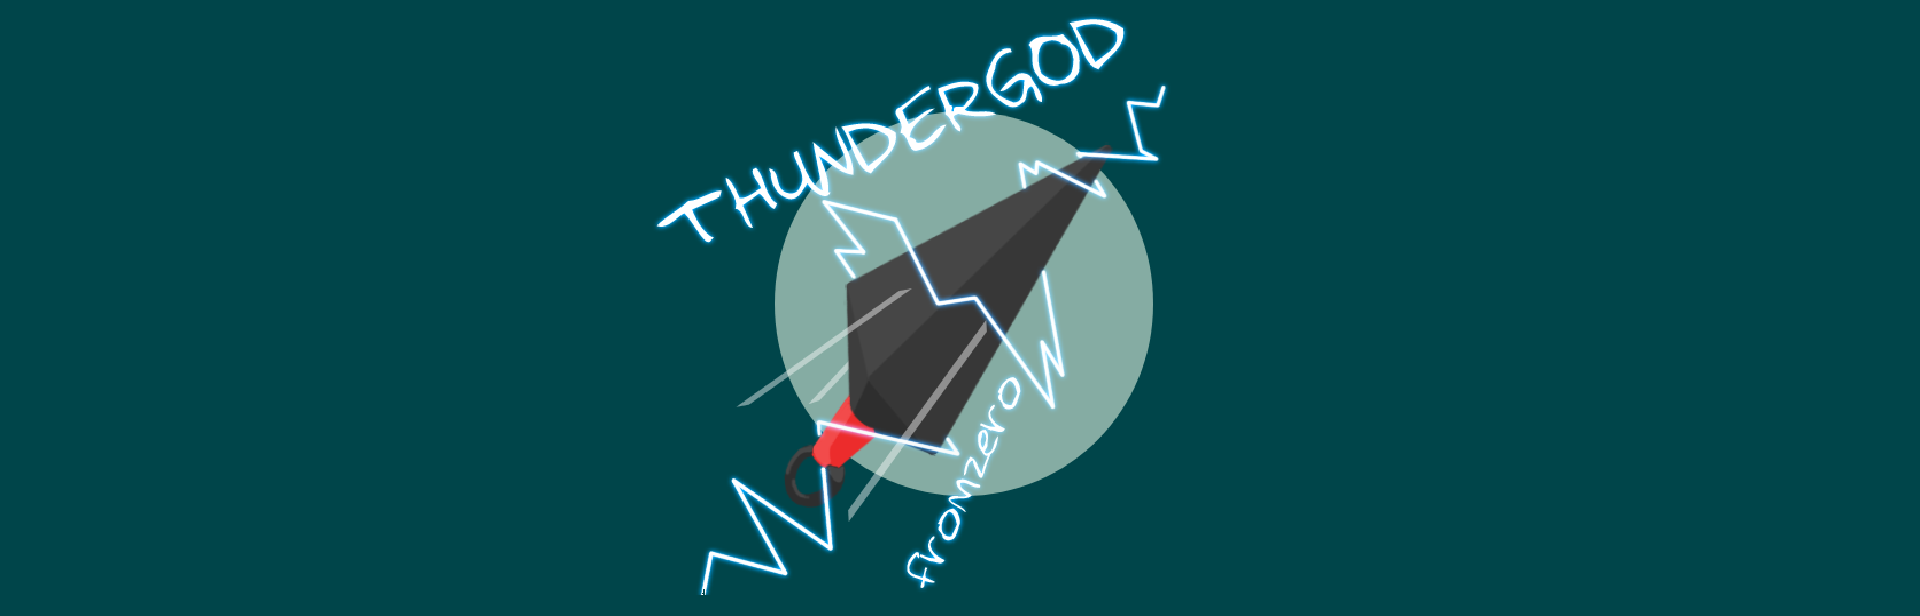 Thunder God: From Zero